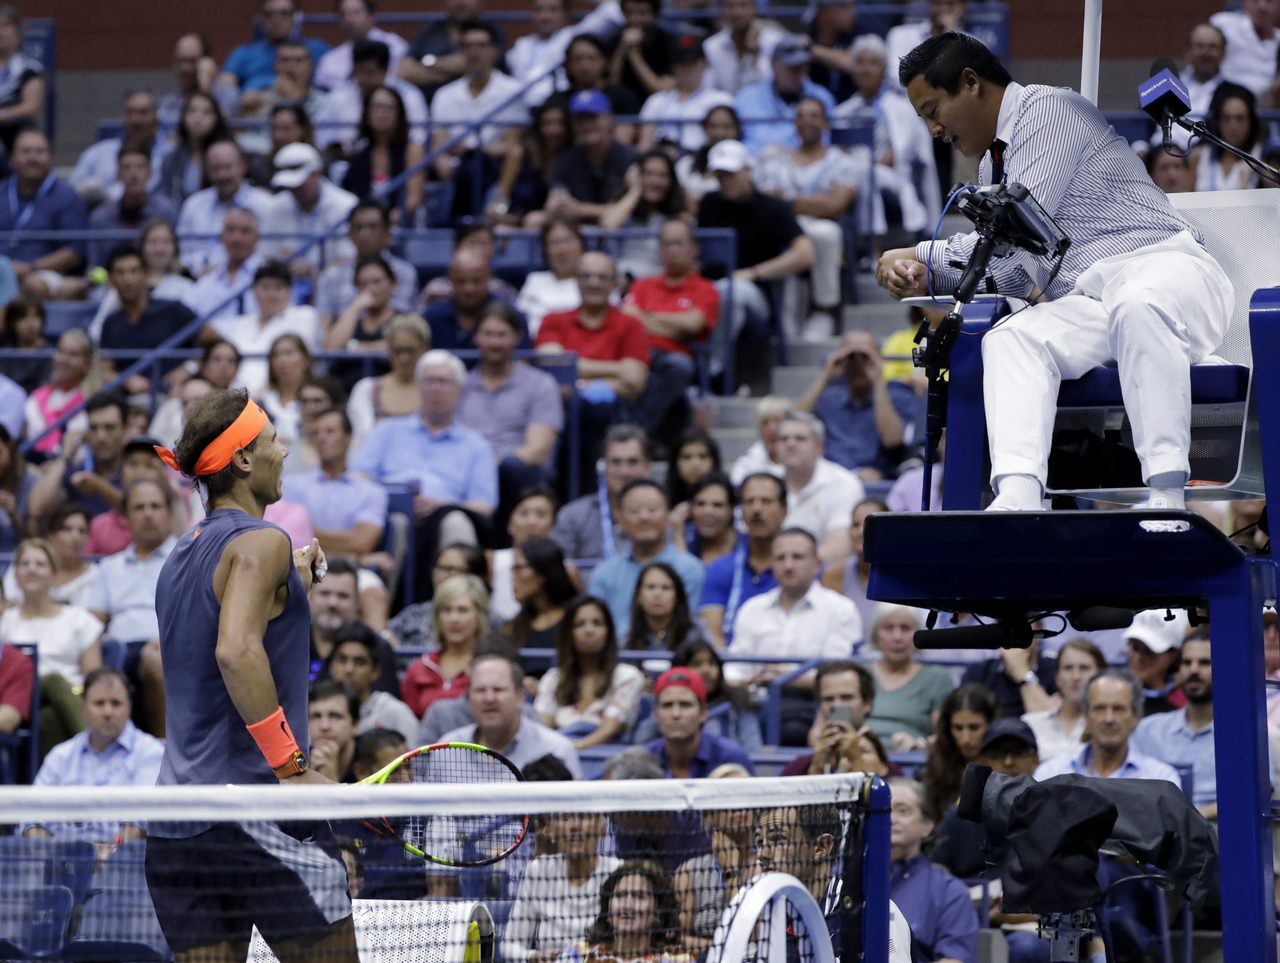 El español Rafael Nadal se acercó al juez para reclamarle por lo que consideró una mala marcación, poco antes de retirarse del partido semifinal contra Del Potro.